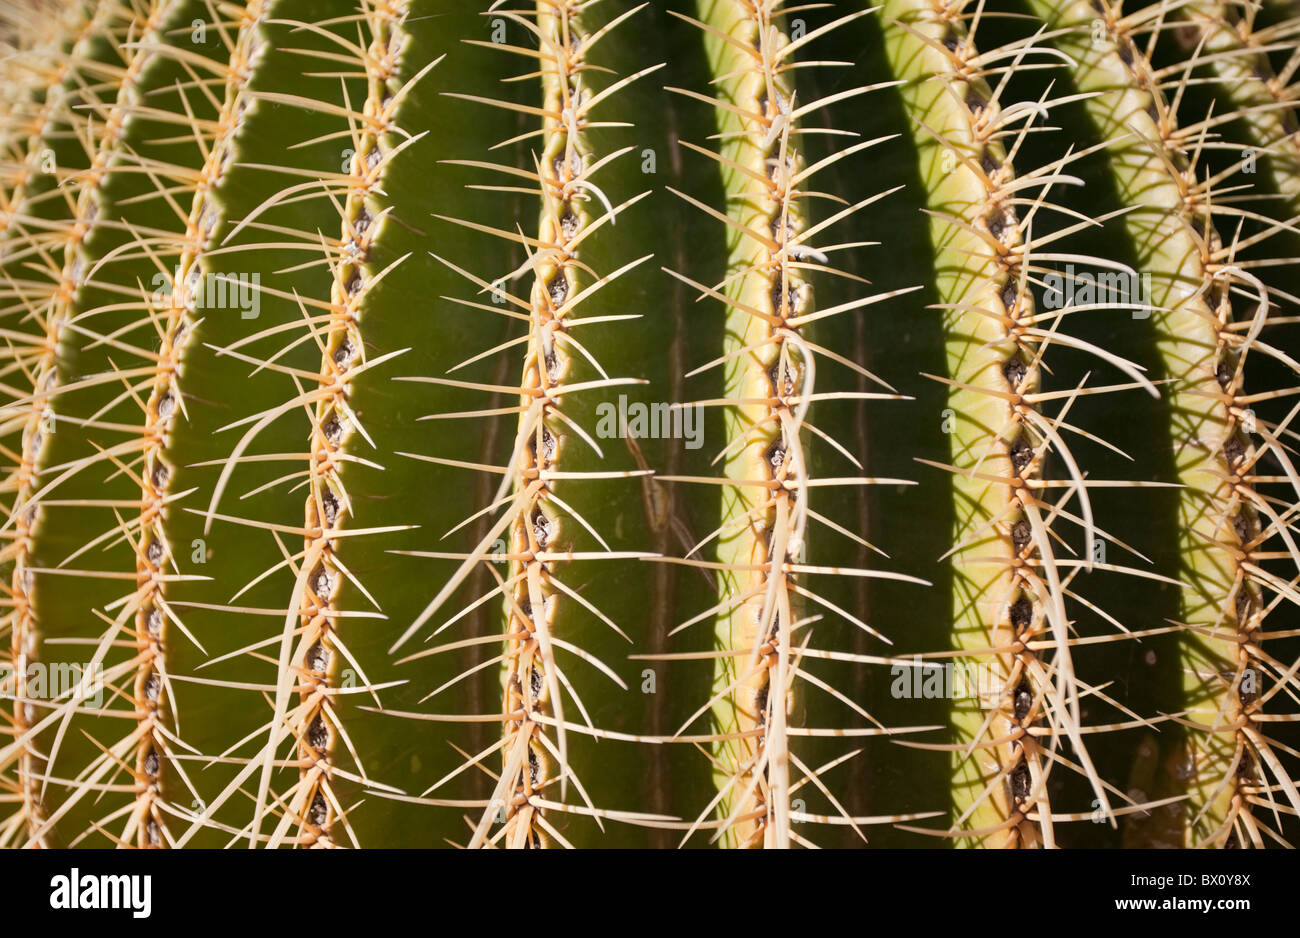 A Cactus close-up. Stock Photo